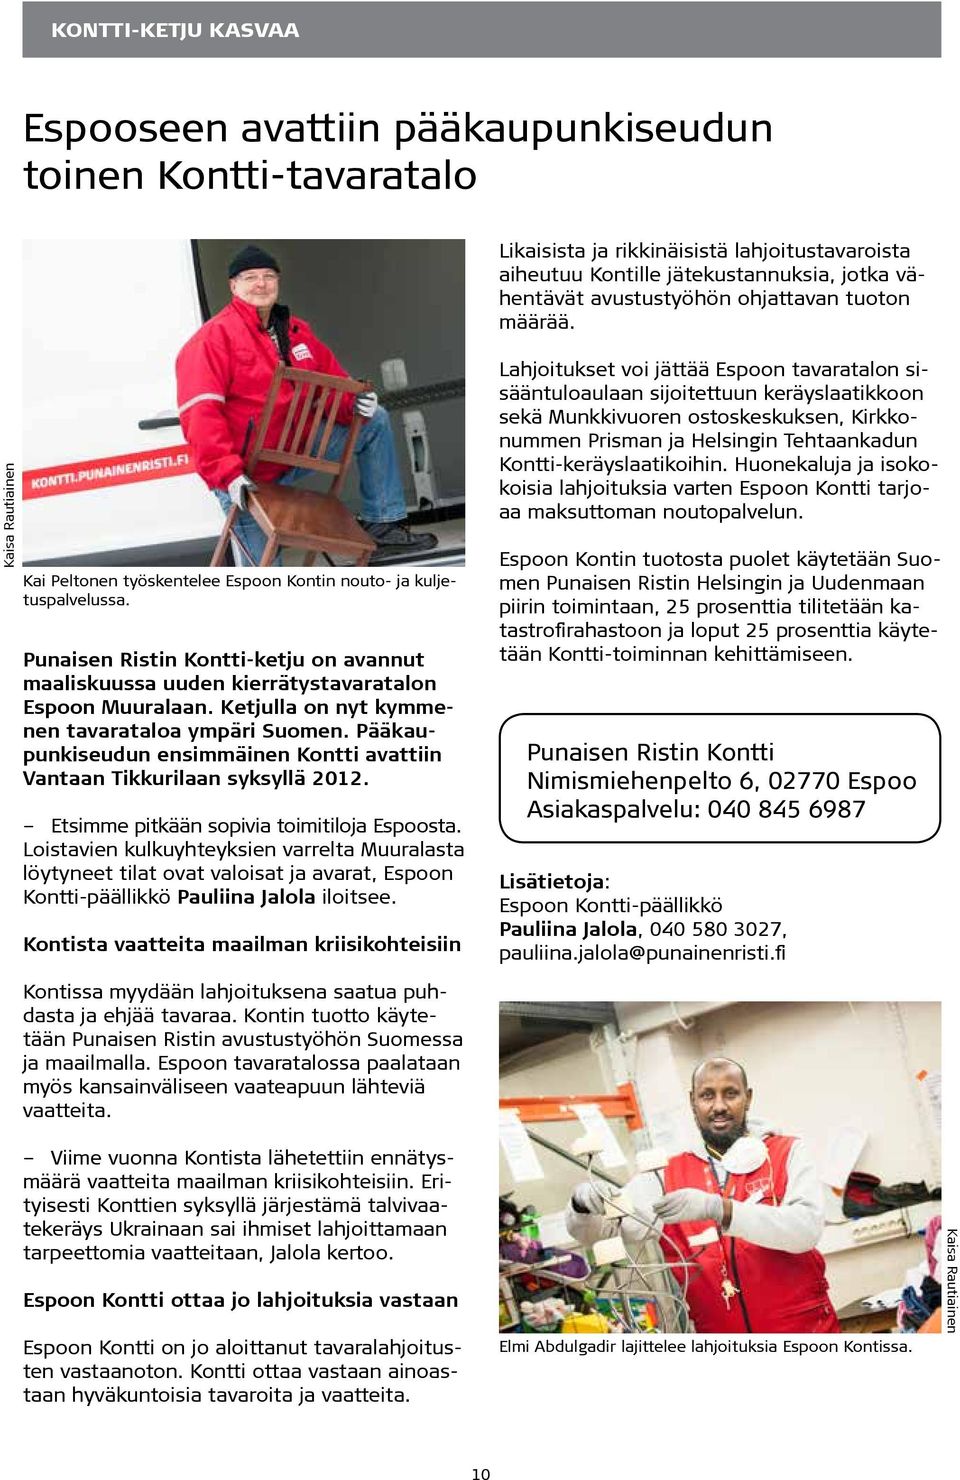 Punaisen Ristin Kontti-ketju on avannut maaliskuussa uuden kierrätystavaratalon Espoon Muuralaan. Ketjulla on nyt kymmenen tavarataloa ympäri Suomen.